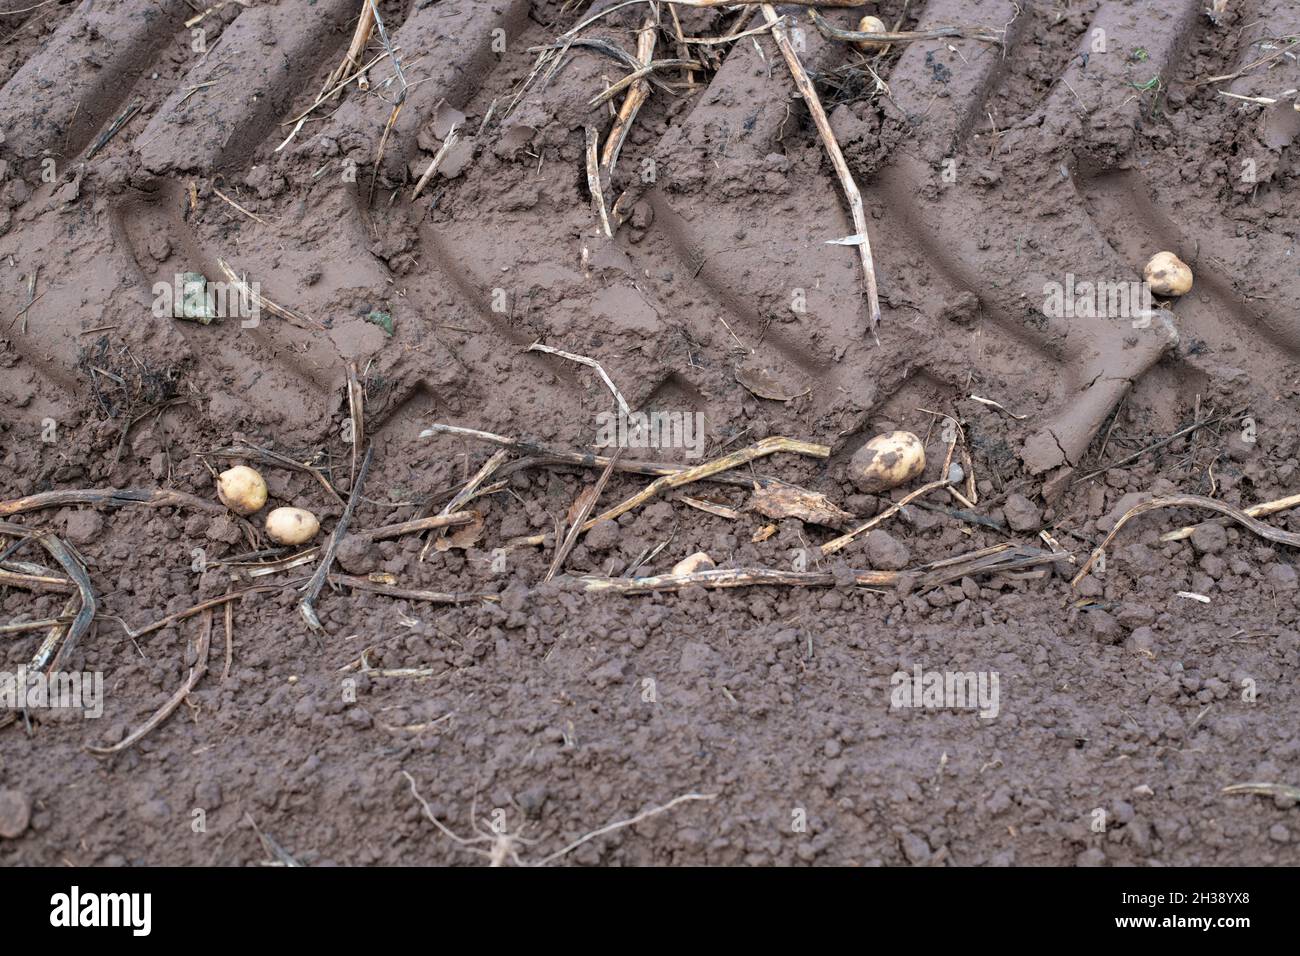 Desechos de papa - tubérculos de papa dejados en el campo después de la cosecha mecánica de papa - Escocia, Reino Unido Foto de stock